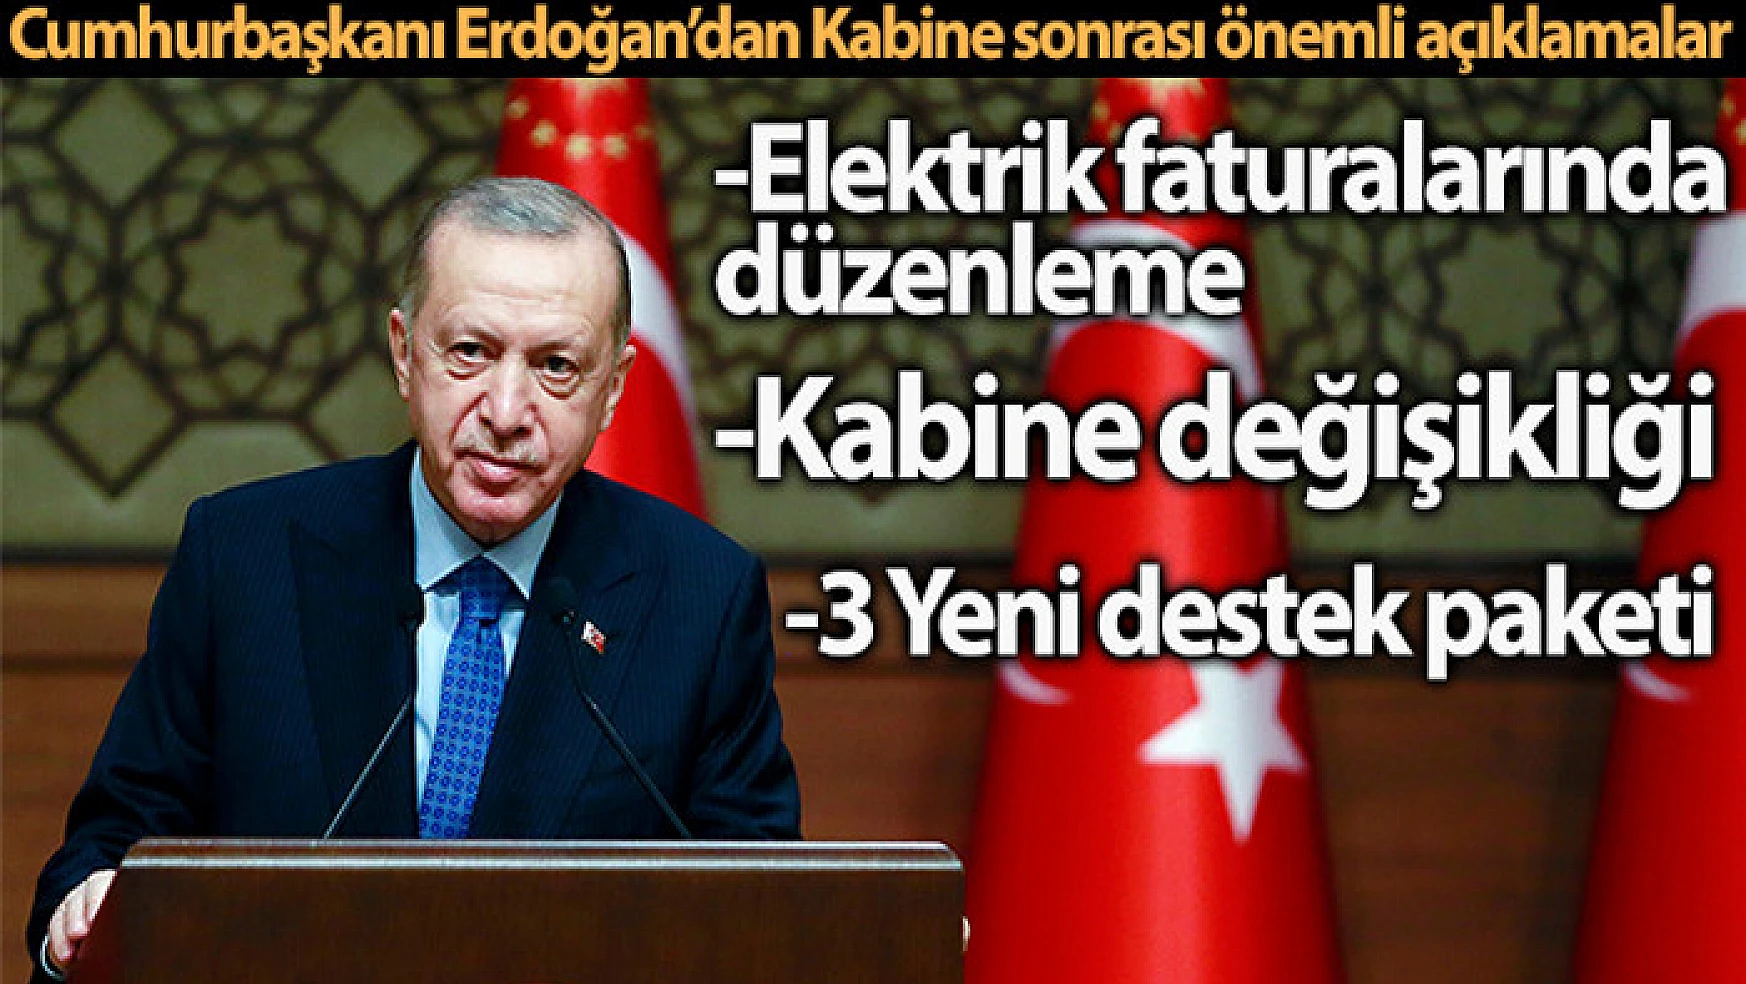 Cumhurbaşkanı Erdoğan: 'Elektrik tarifelerini yeniden düzenledik'